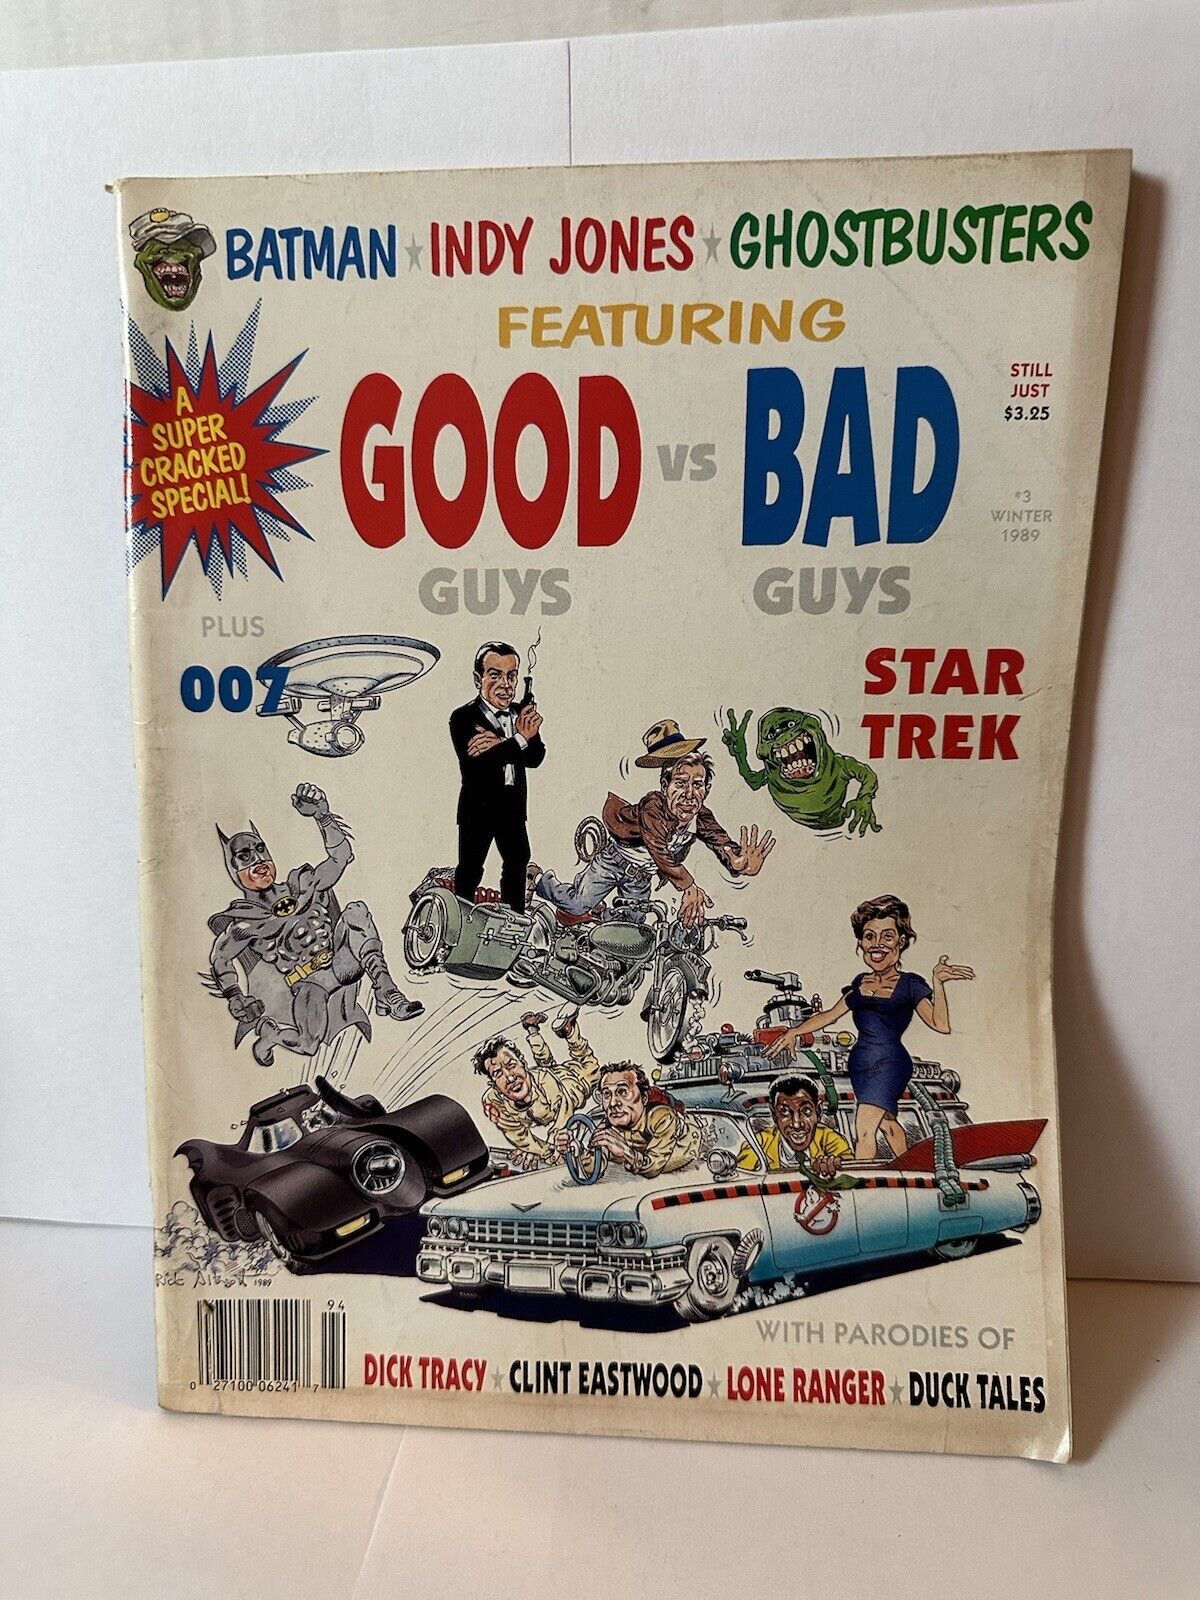 Super Cracked Comic Magazine #3 Winter 1989 - Good vs Bad Batman, Cartoons